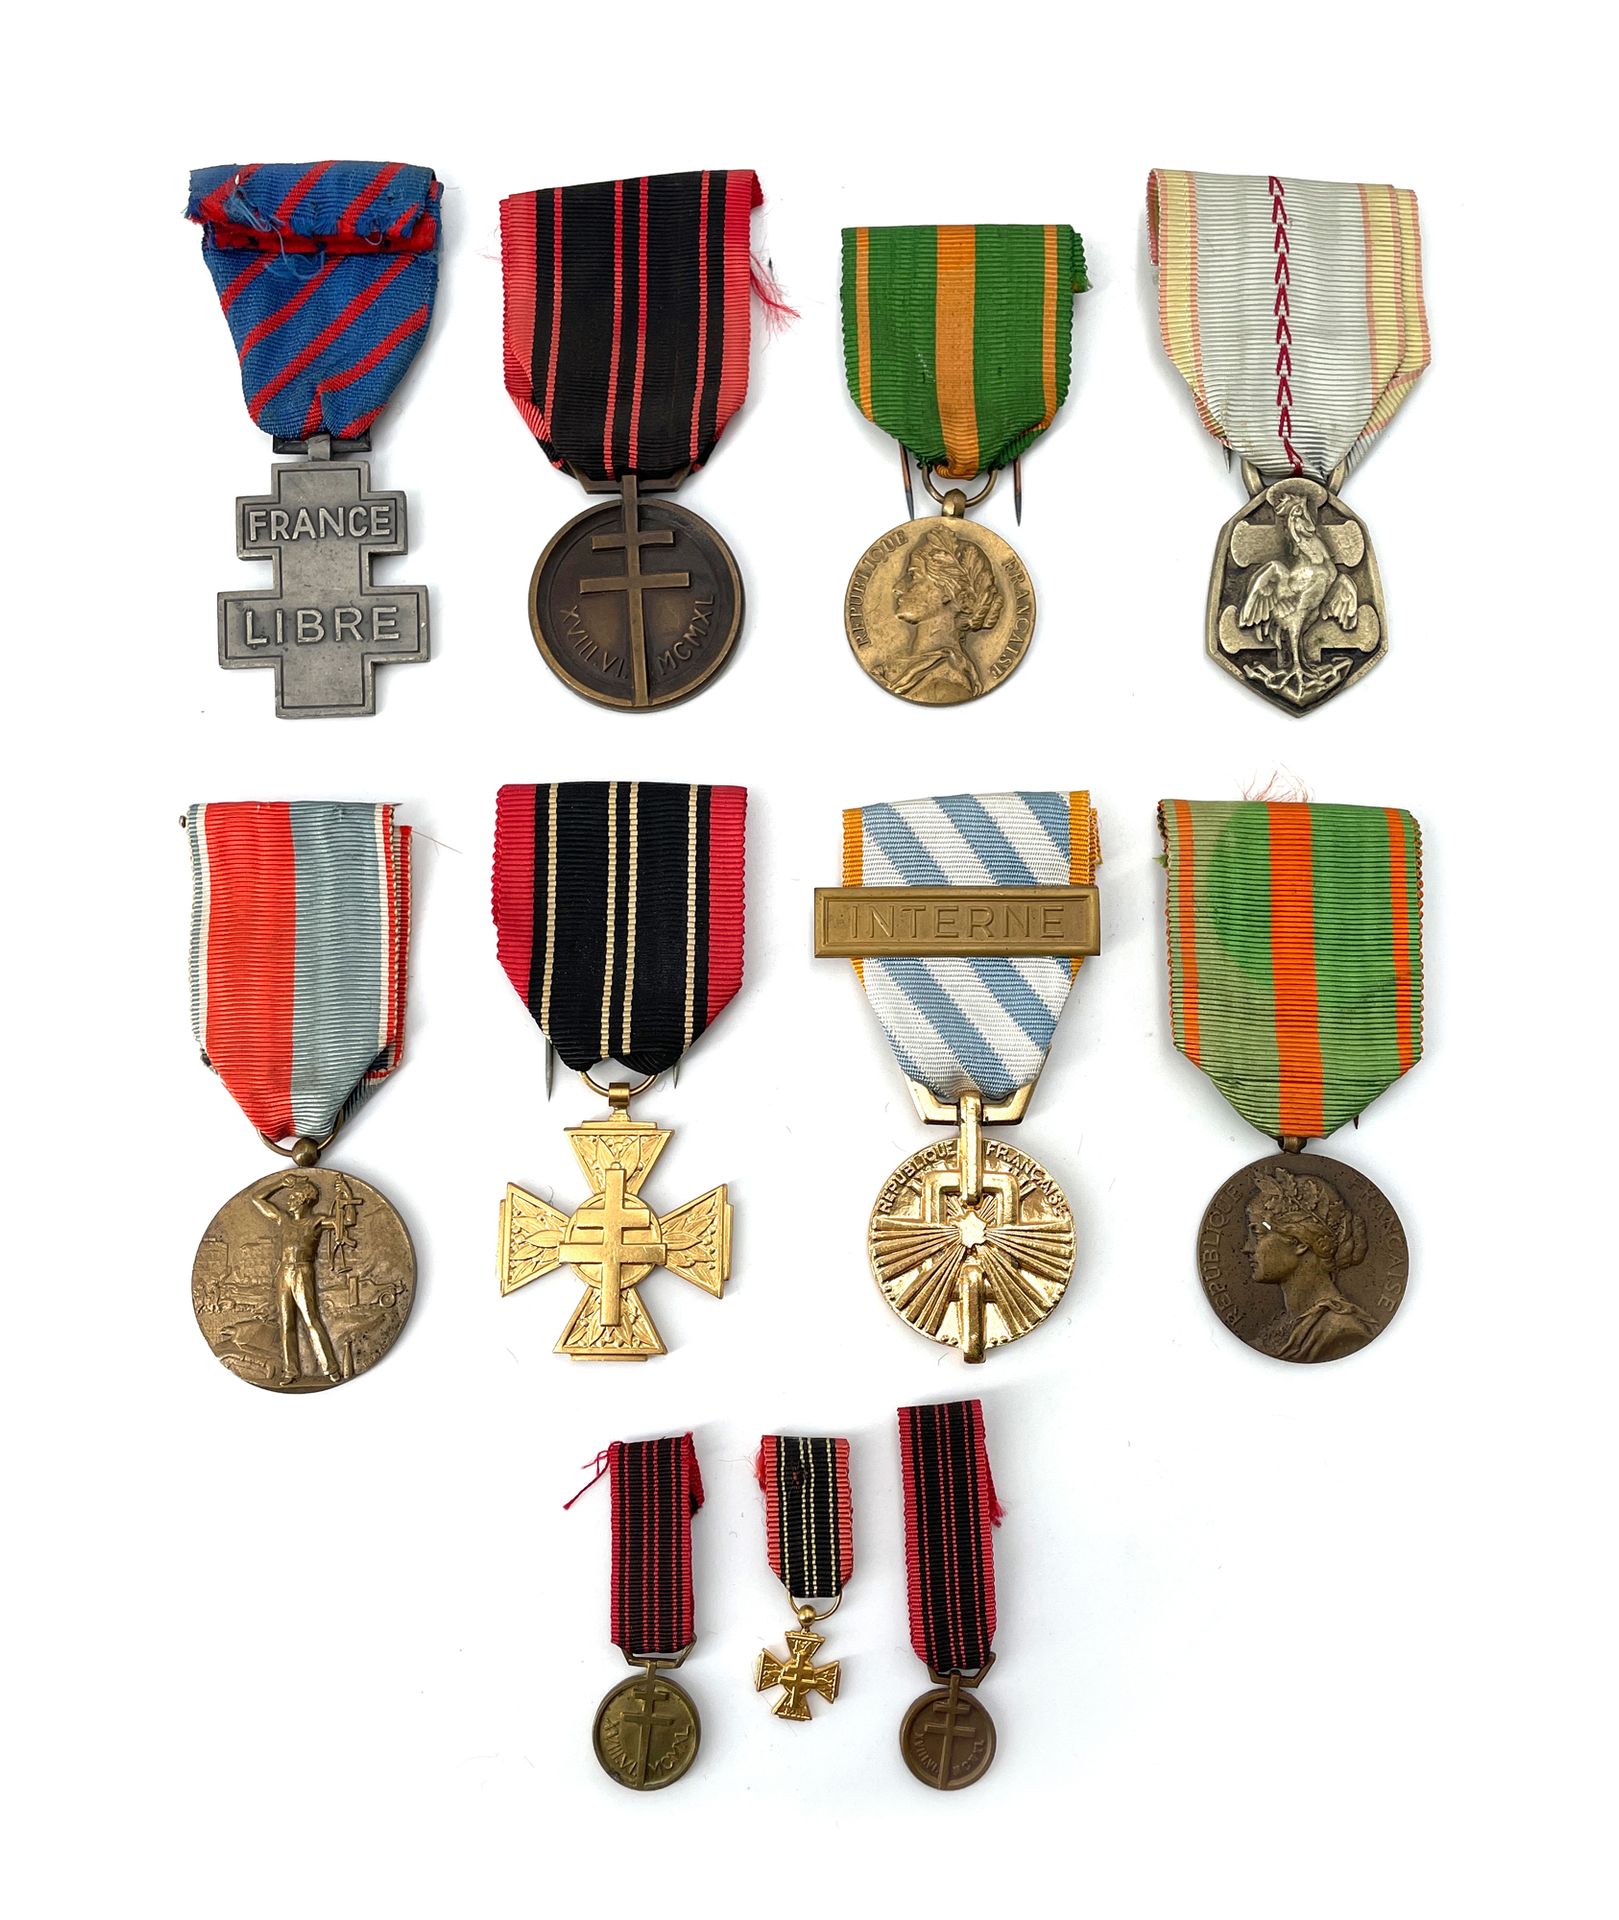 Null 法国第二总经理 十一个纪念勋章
- 驱逐勋章。
- 纪念勋章39-45
- 抵抗勋章，有两个缩影。
-
抵抗组织的志愿战士十字勋章（有缩影）。
- 自&hellip;